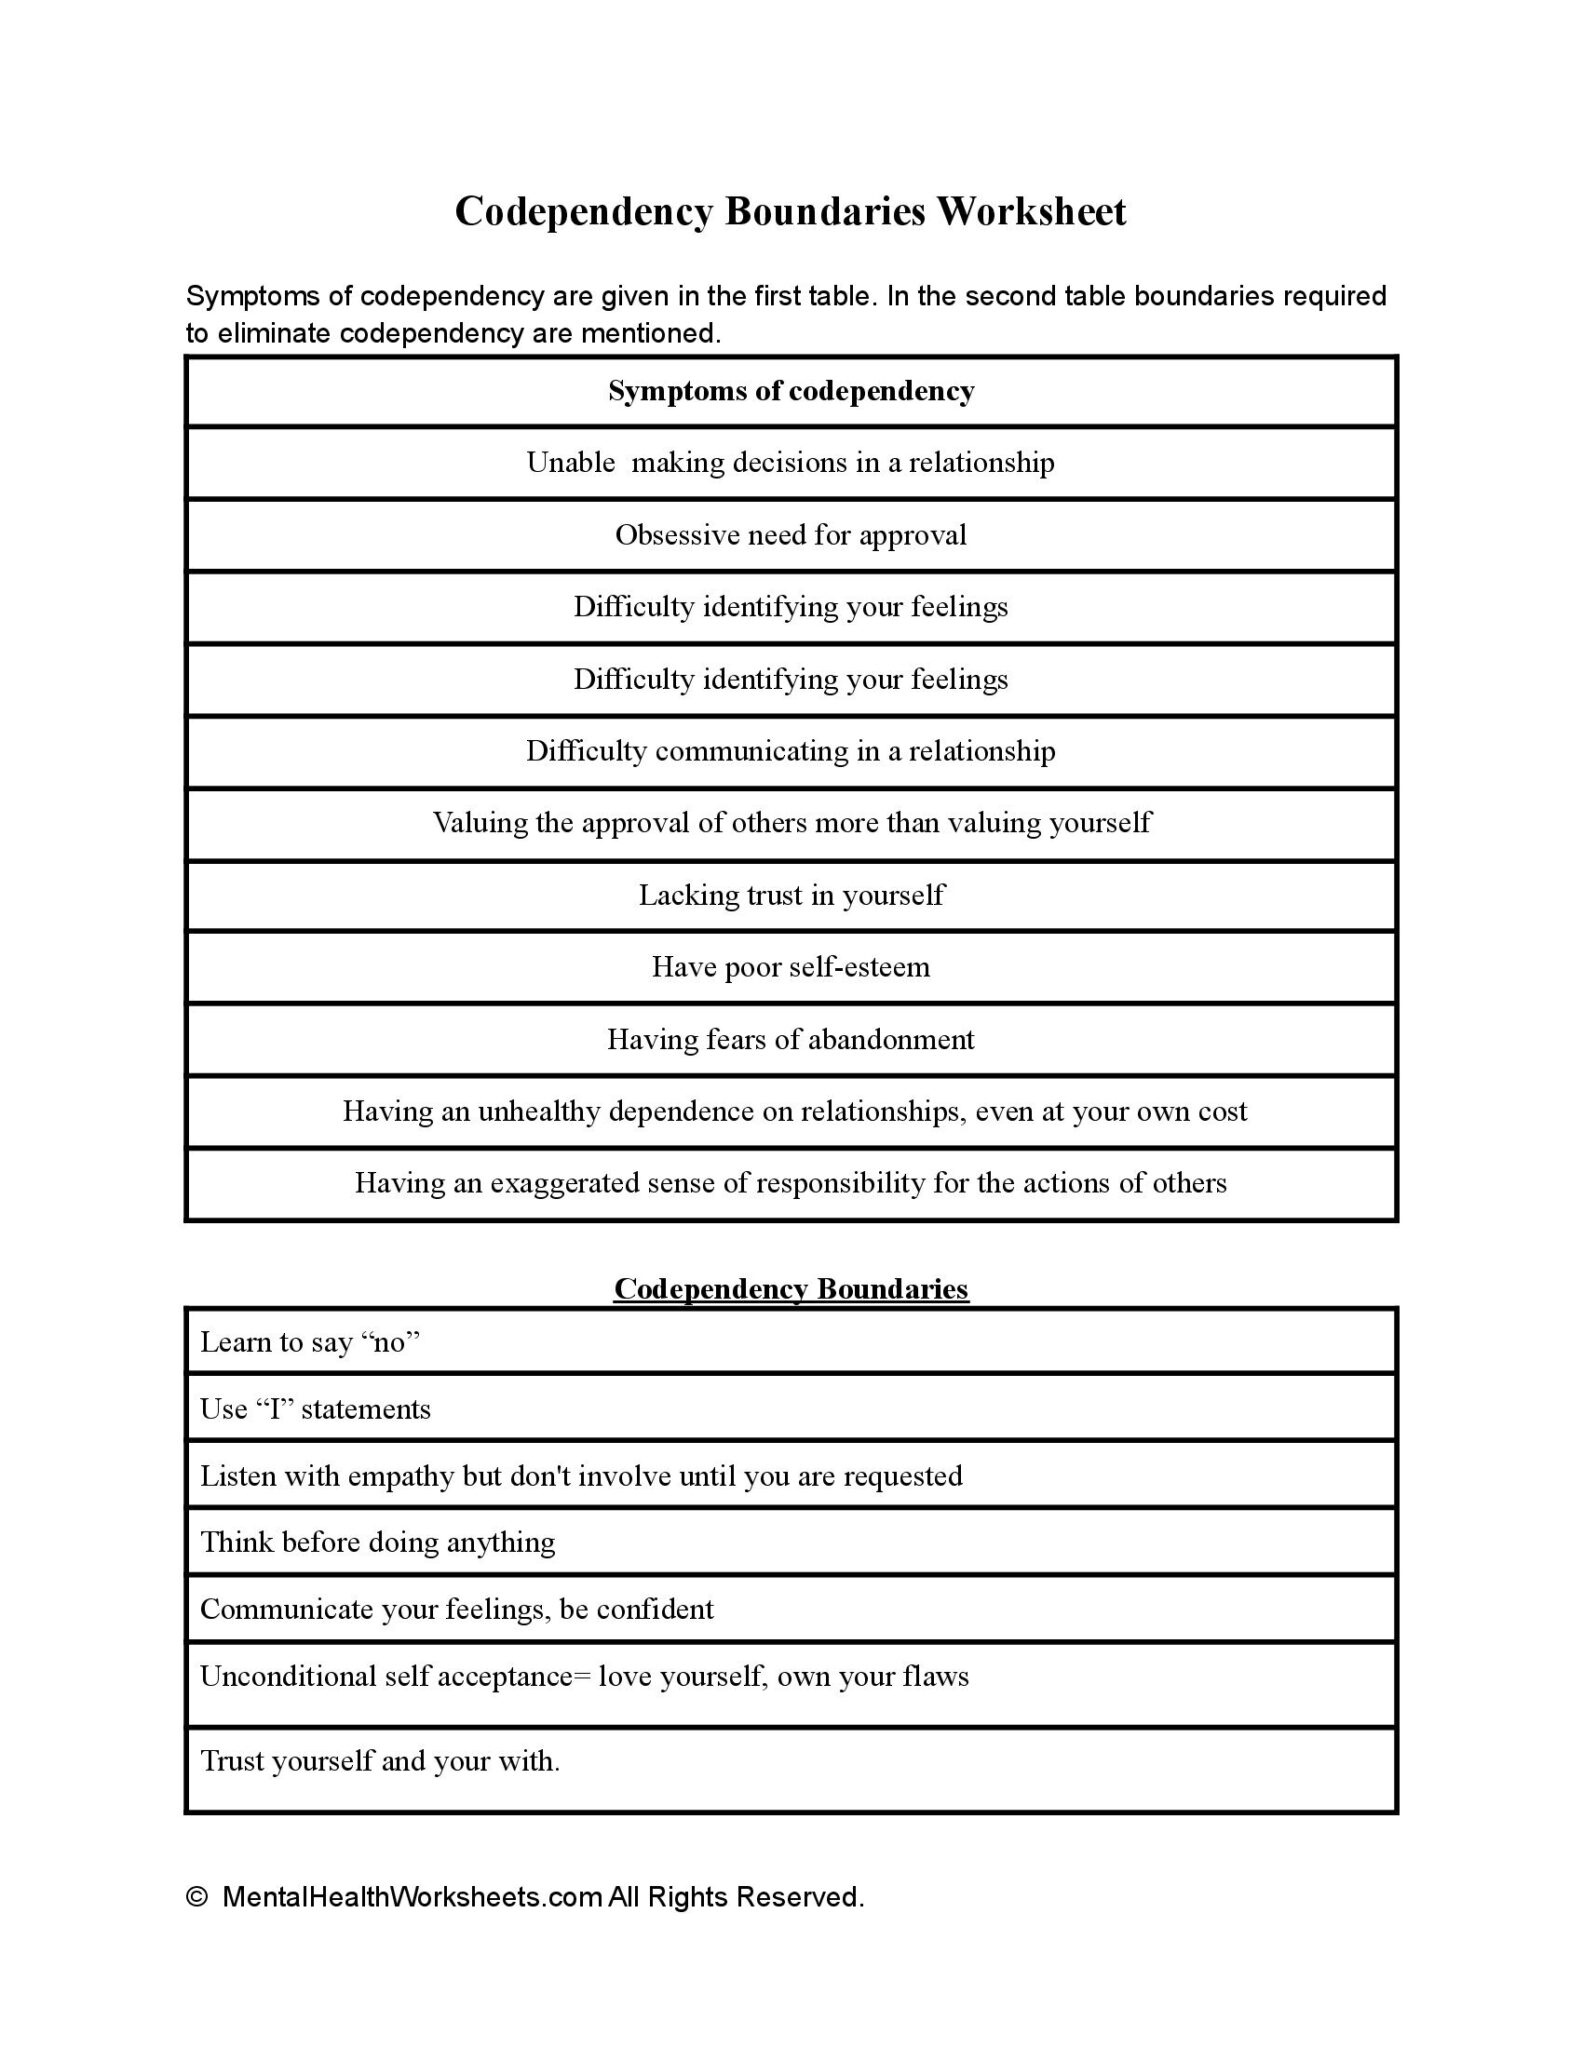 Codependency Boundaries Worksheet Mental Health Worksheets